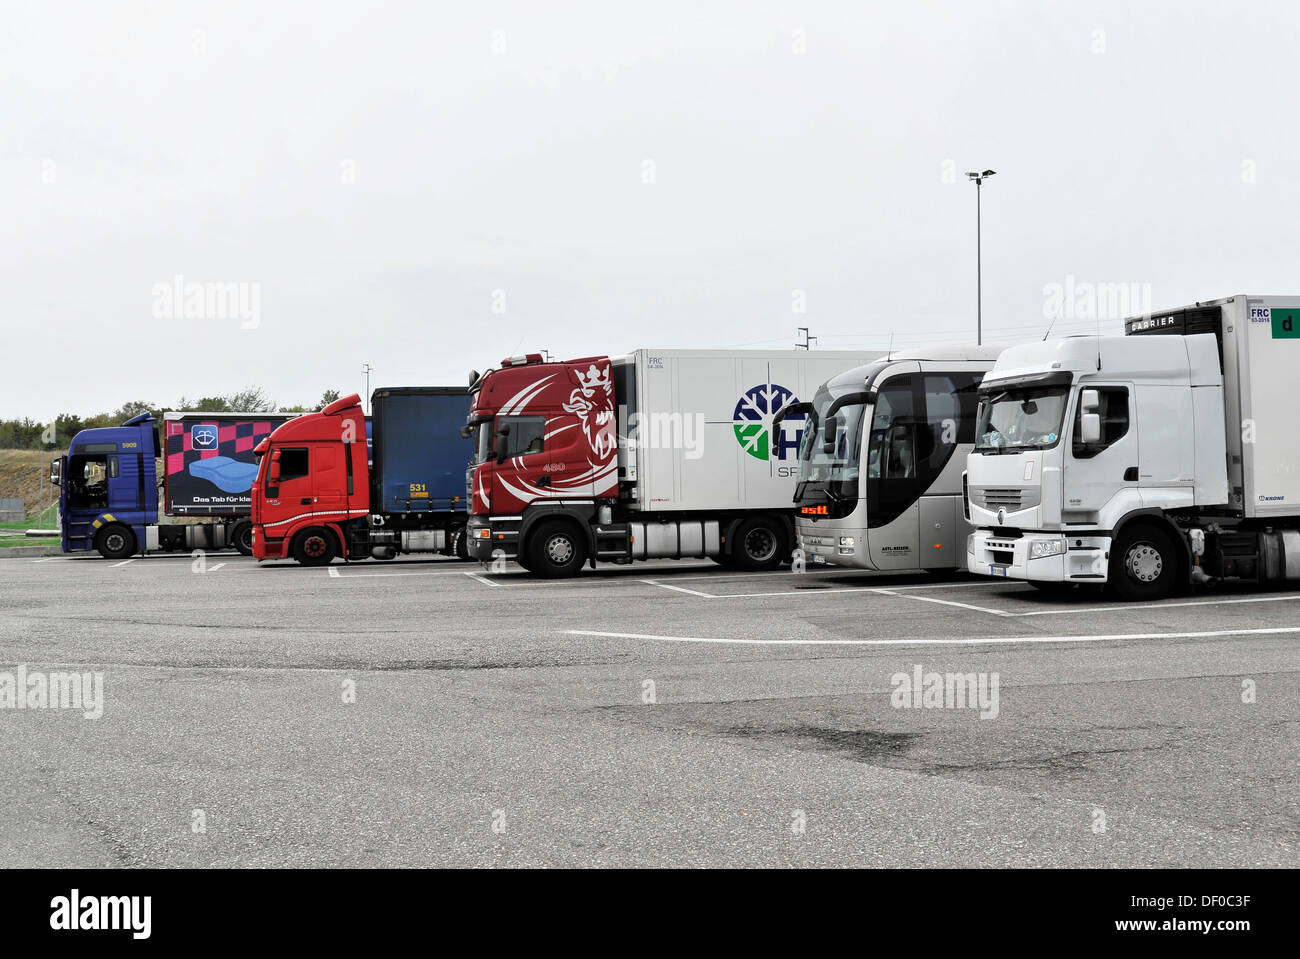 Arresto carrello, camion in corrispondenza di una stazione di servizio vicino a Modena, Italia, Europa Foto Stock